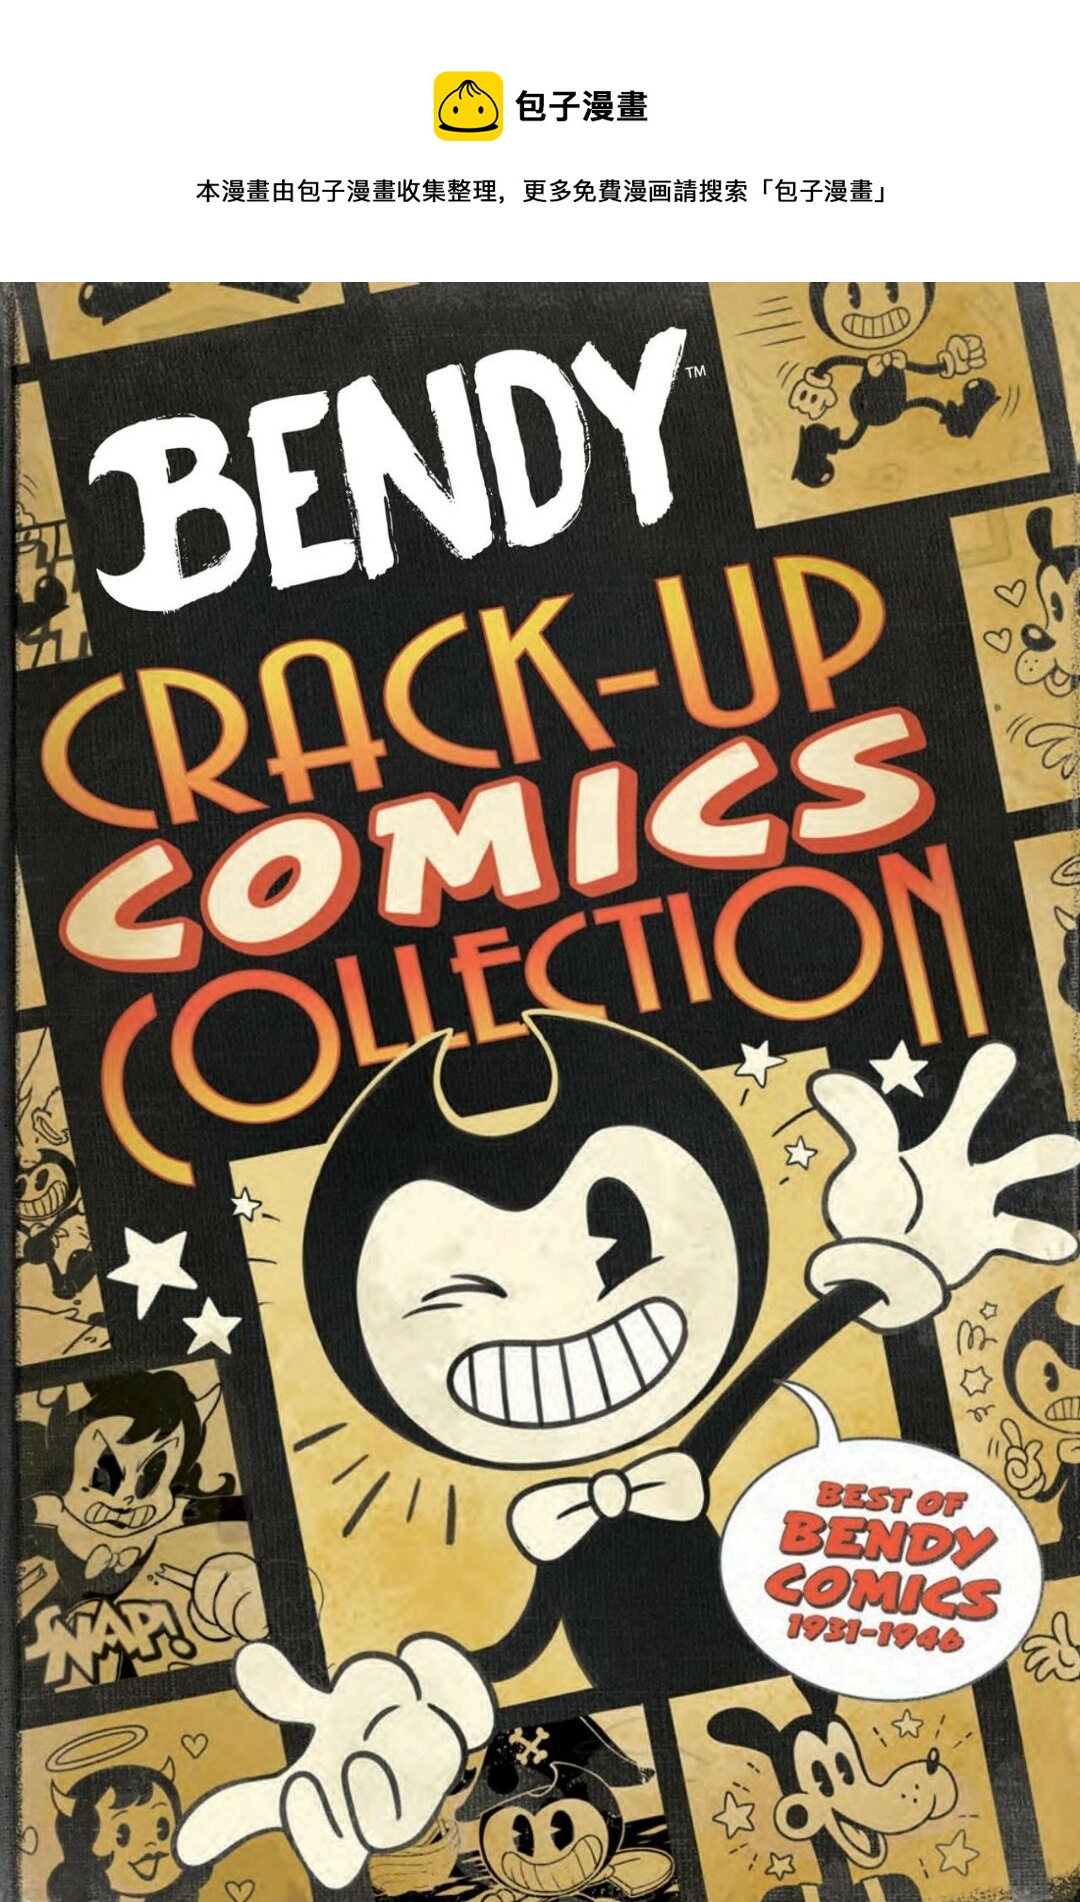 BENDY CRACK-UP COMICS COLLECTION - 封面和副頁預覽 - 1